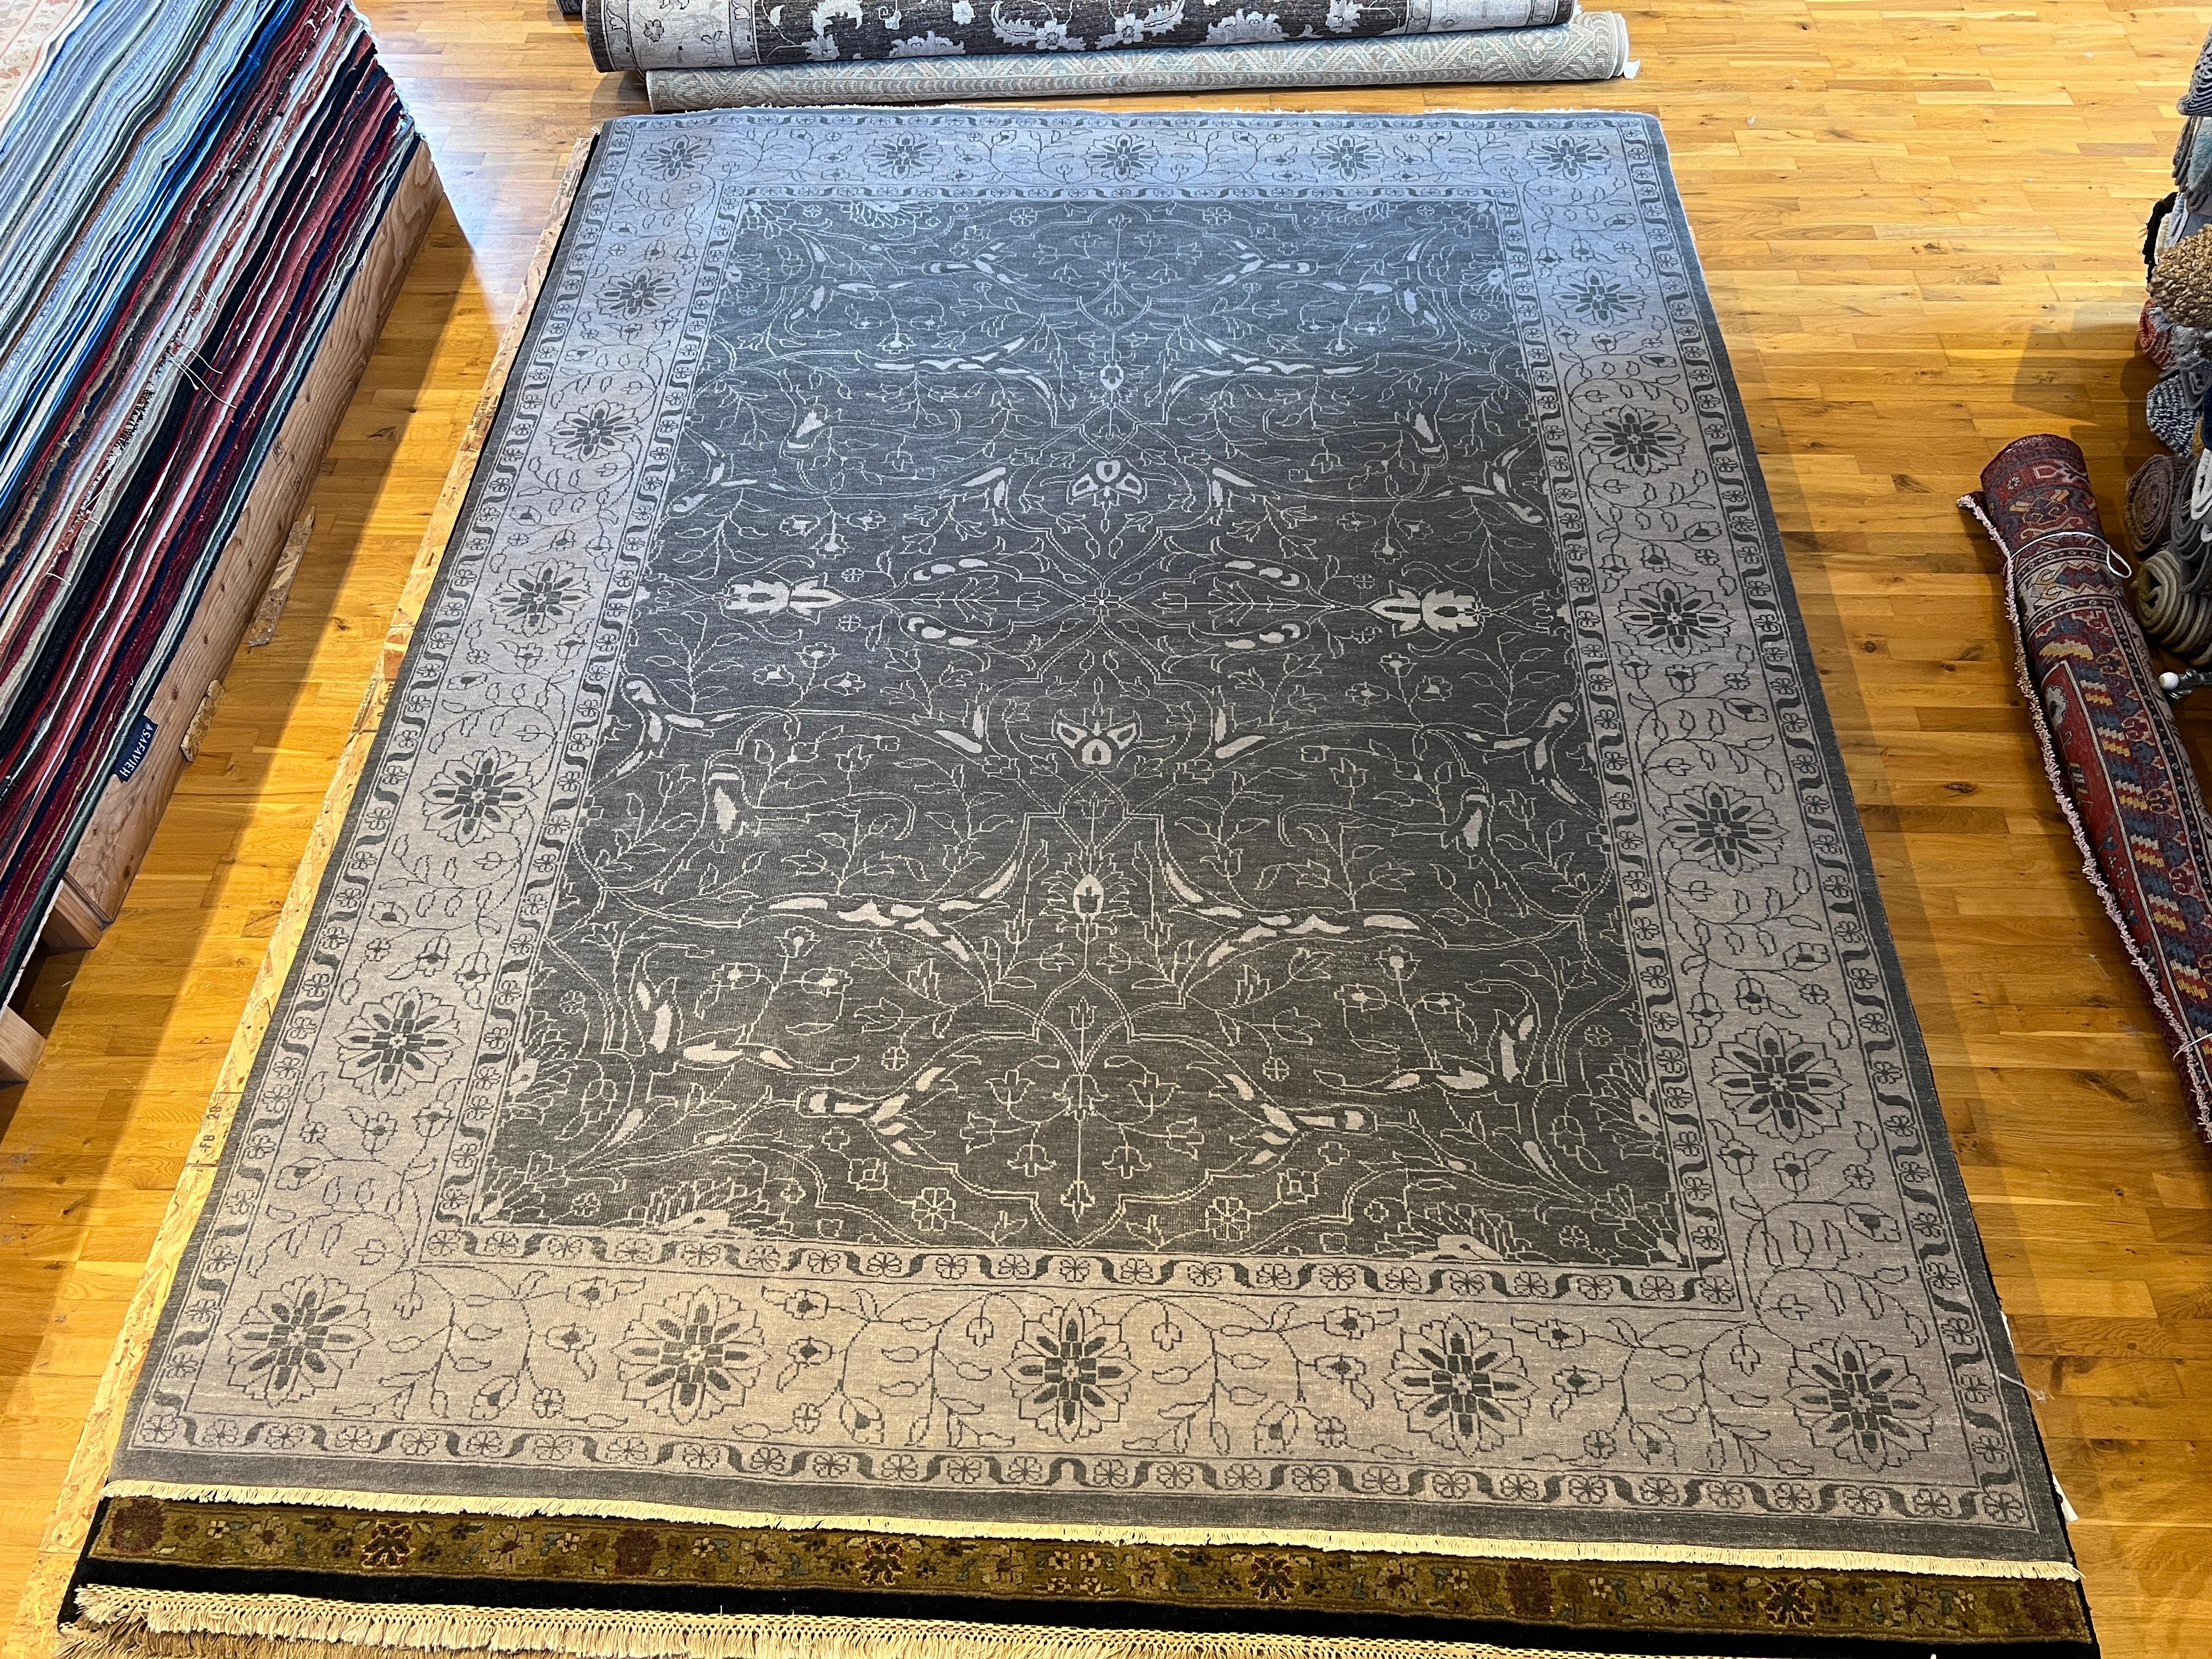 Élevez votre espace avec notre tapis 9'x12' de design persan gris ivoire entièrement en laine noué à la main en Inde. Doté d'un superbe design de transition, ce tapis ajoute du style et un confort luxueux à n'importe quelle pièce. Fabriqué en laine